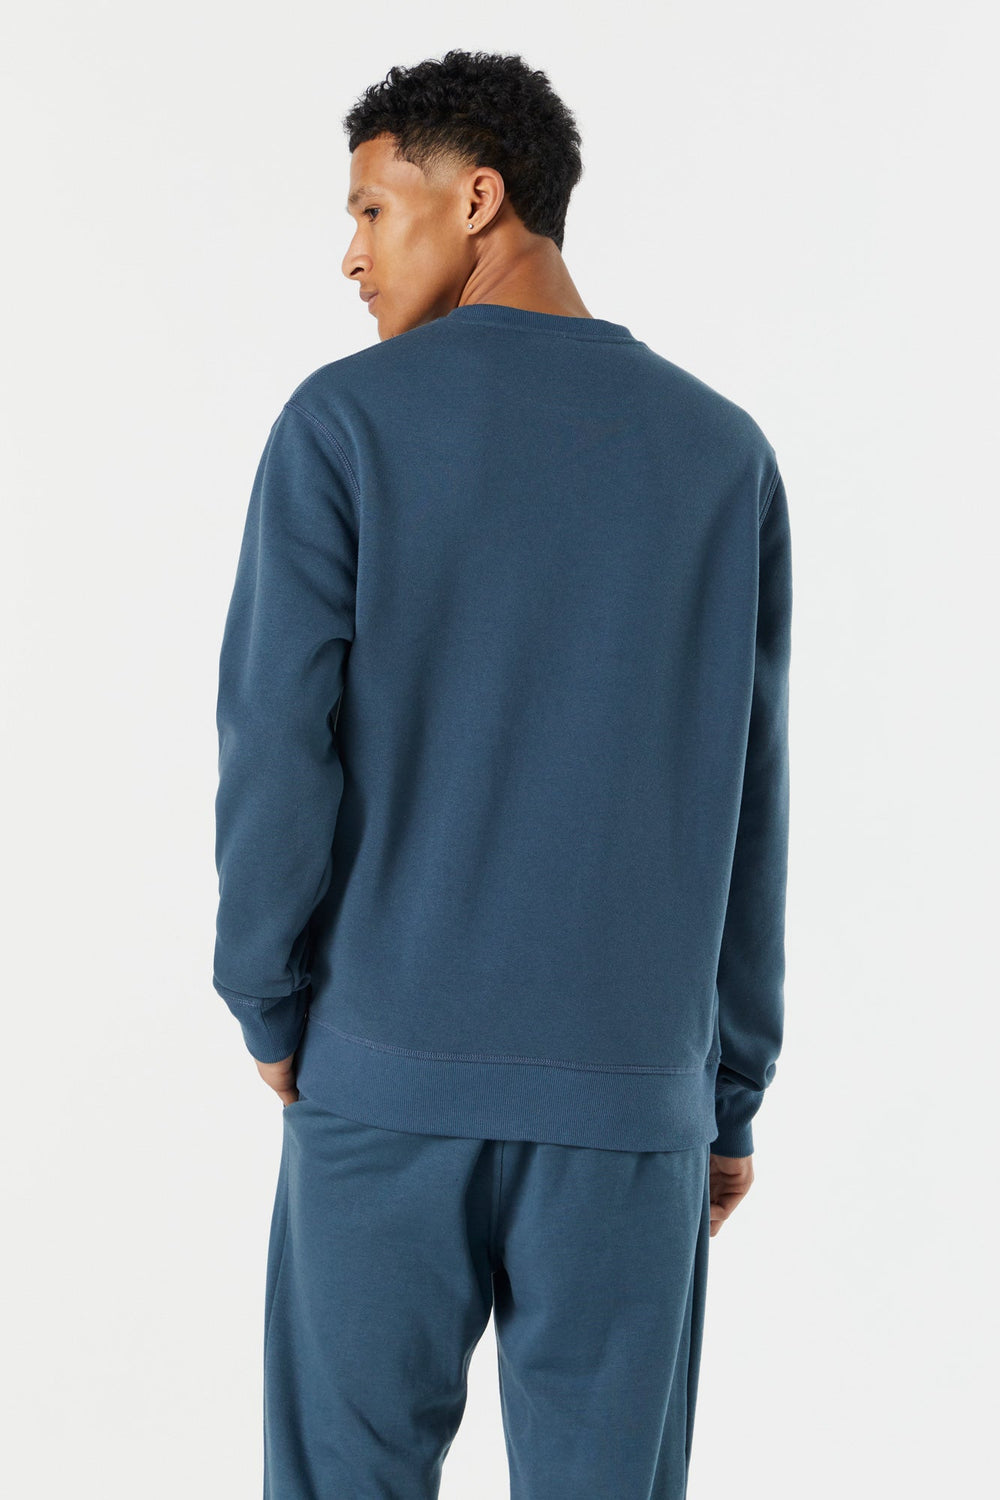 Colored Solid Fleece Sweatshirt Colored Solid Fleece Sweatshirt 8